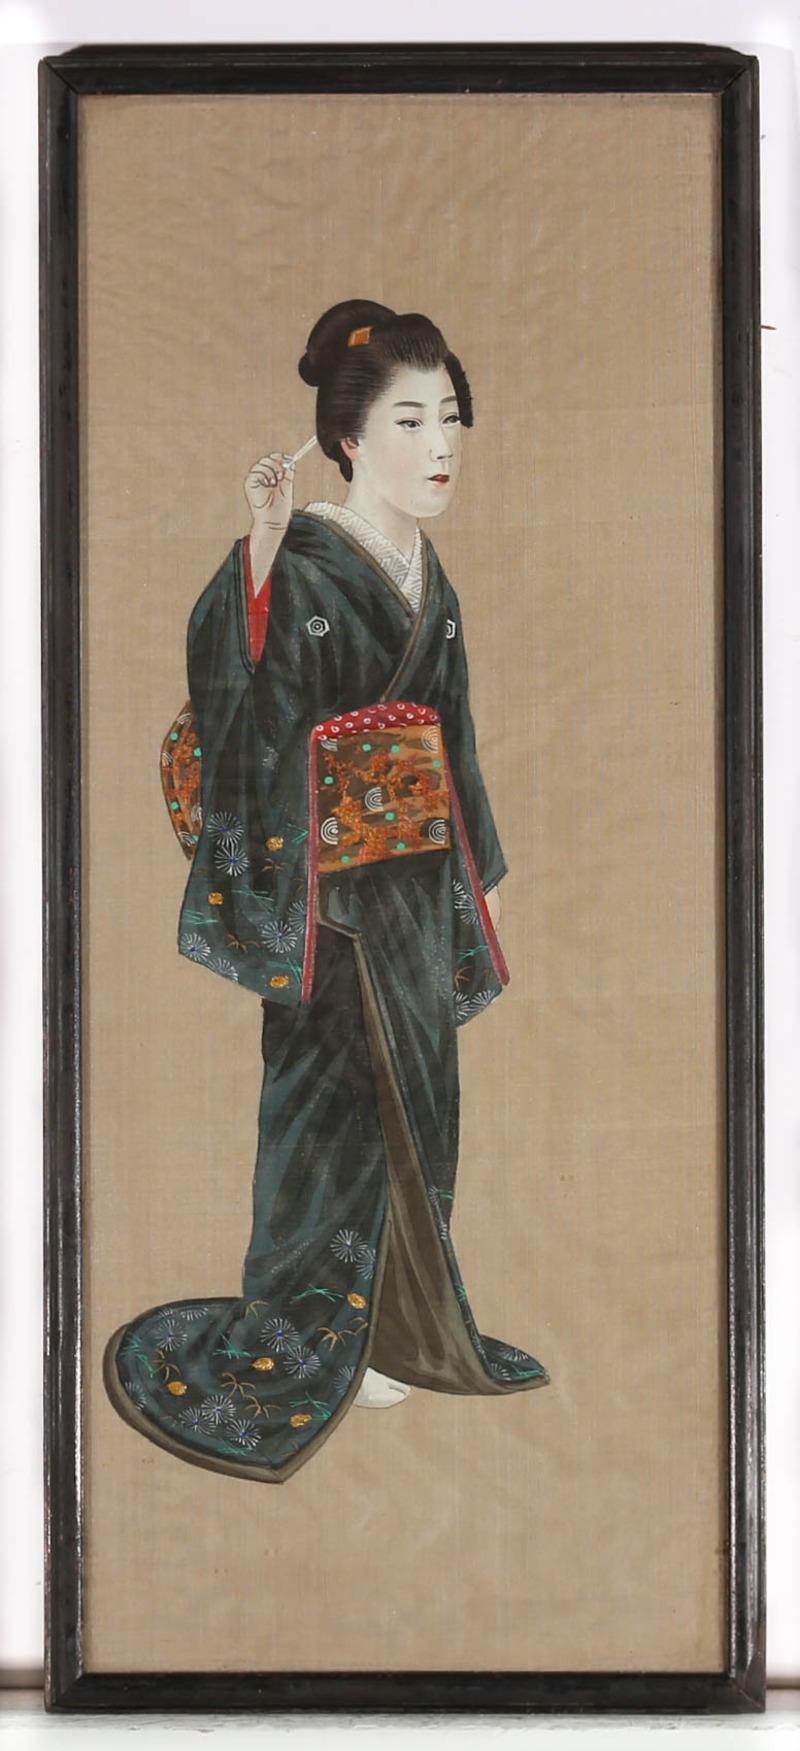 Diese Aquarell- und Gouachestudie aus dem frühen 20. Jahrhundert zeigt eine wunderschöne japanische Geisha, die einen luxuriösen Seidenkimono trägt, der mit zarten Stickereien und Handmalereien verziert ist. Jedes Teil ihres teuren Kitsuke wurde